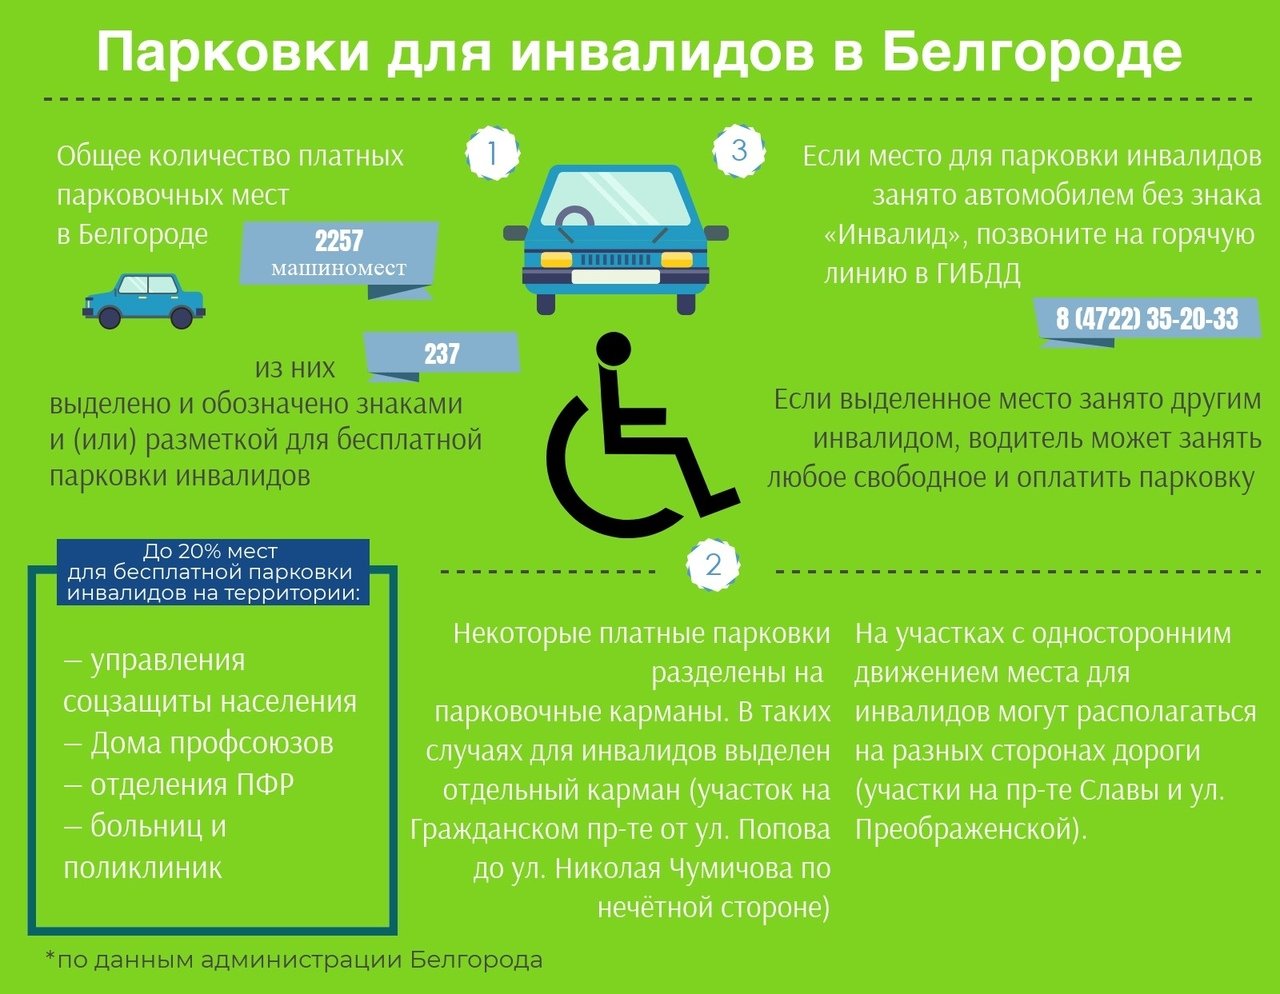 Платят ли транспортный. Парковка для автомобилей инвалидов. Льготы для инвалидов парковка авто. Место для парковки автомобиля инвалидов. Право на бесплатную парковку для инвалидов.